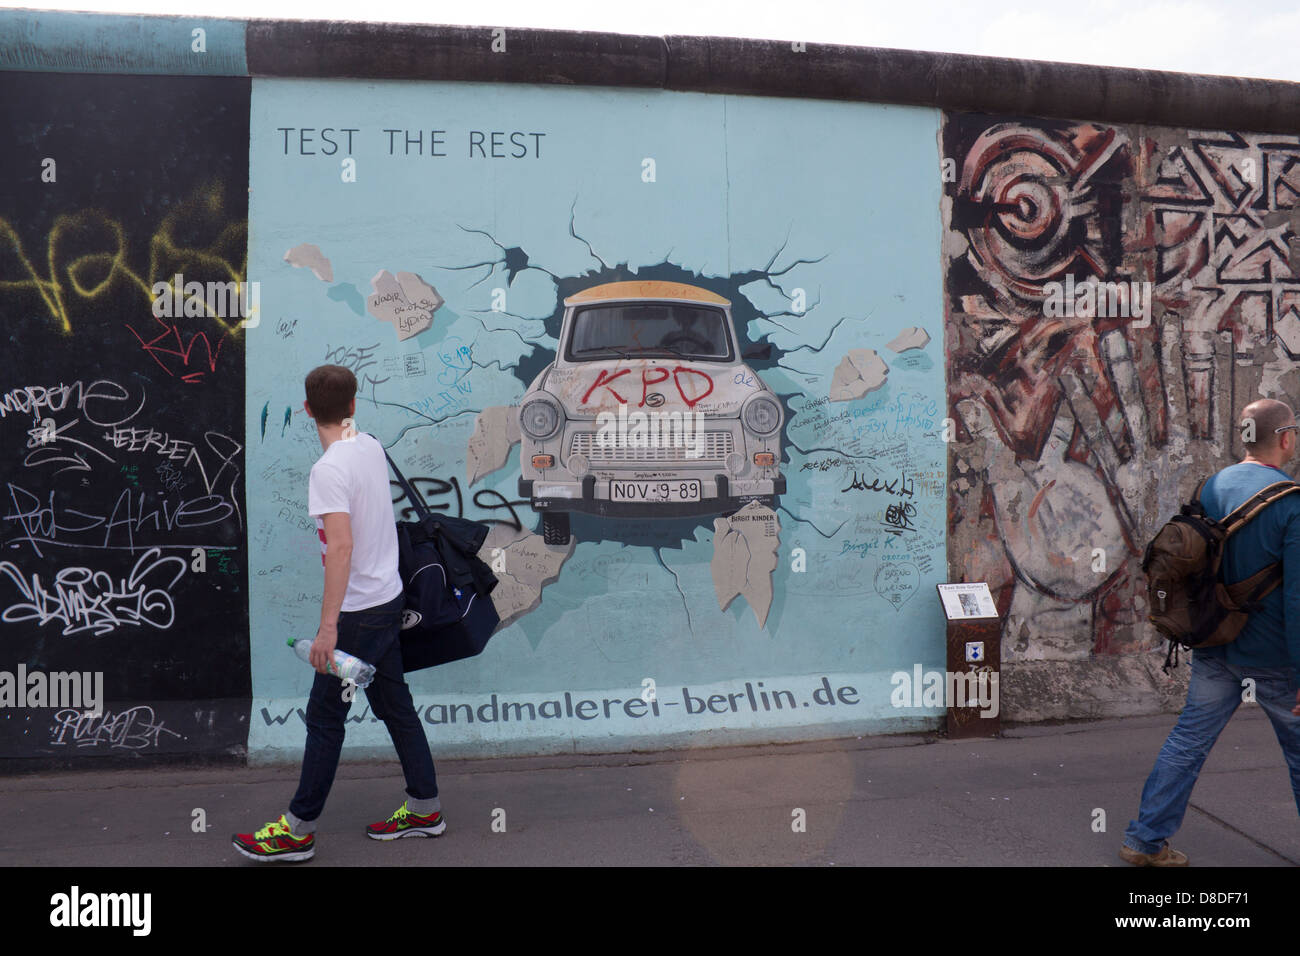 Mur de Berlin East Side Gallery peinture de voiture Trabant briser mur avec man walking passé, retour à Berlin Allemagne Banque D'Images